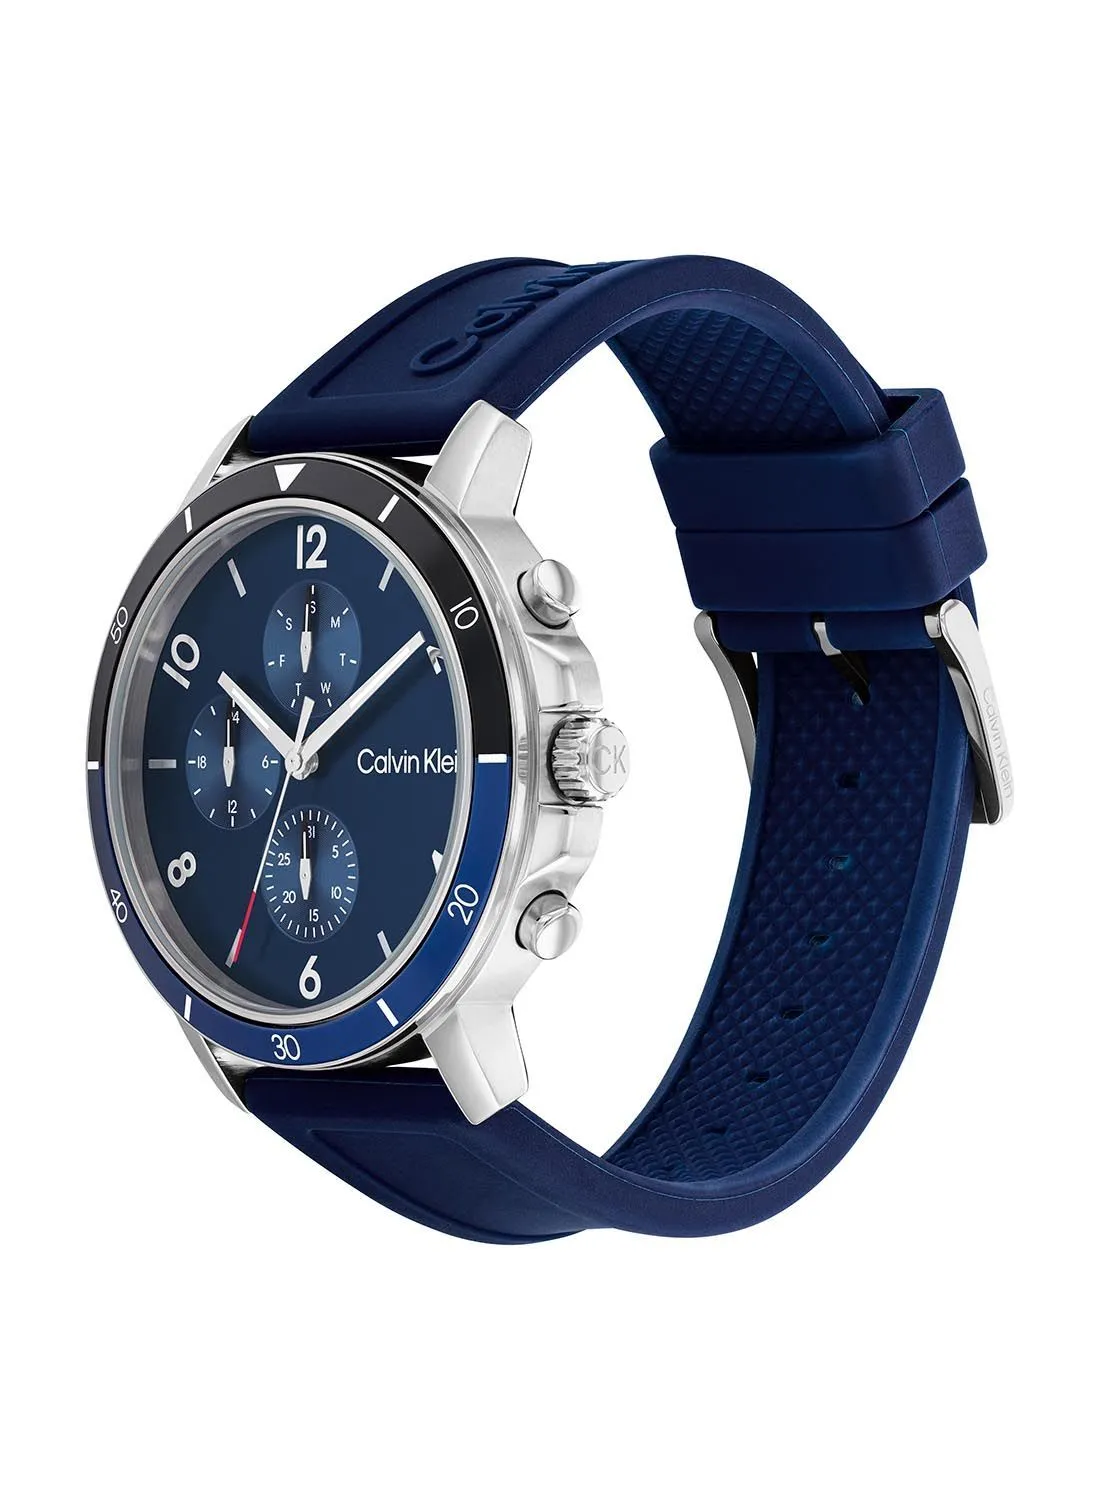 CALVIN KLEIN Men's Analog Round Waterproof  Wrist Watch With Silicone Strap 25200071